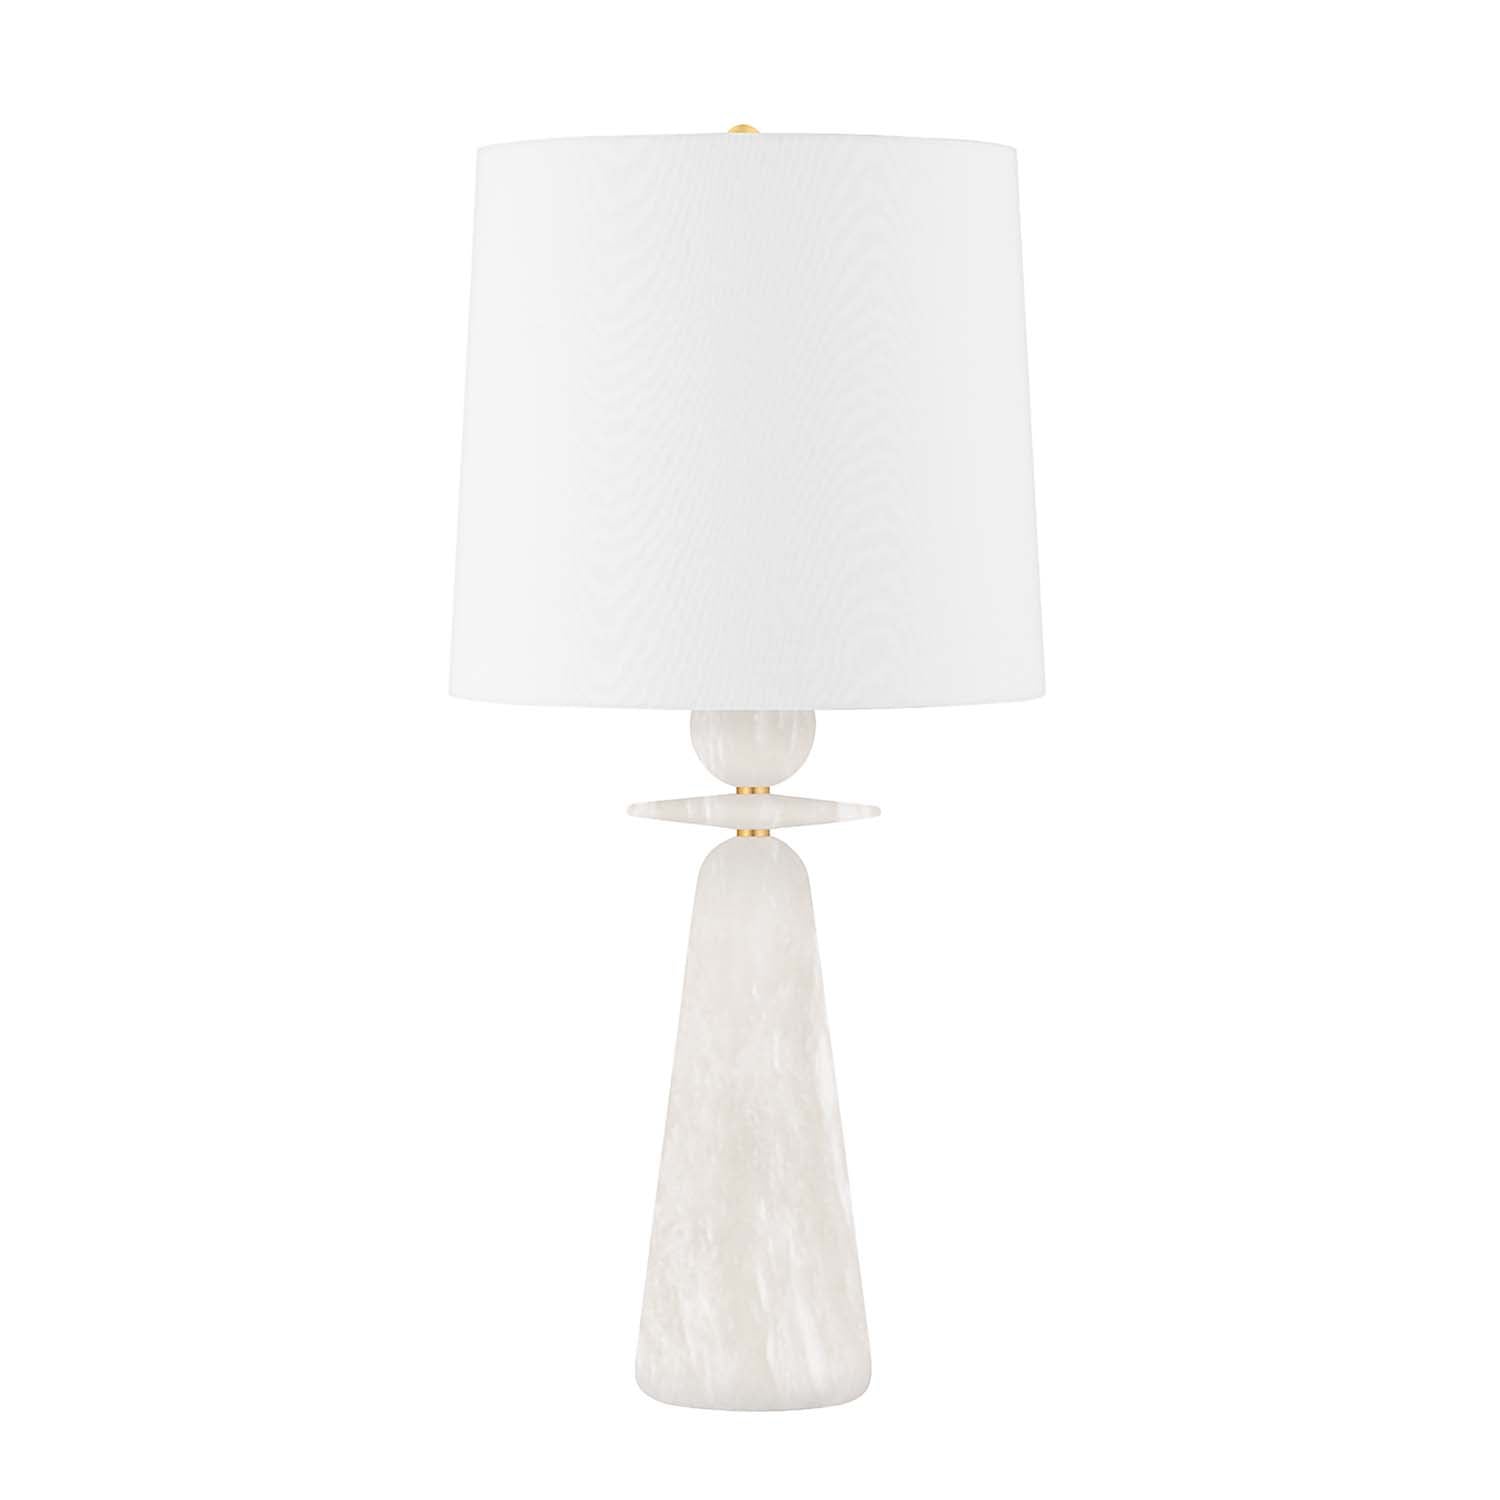 MONTGOMERY - Lampe de chevet en marbre blanc haussmannien